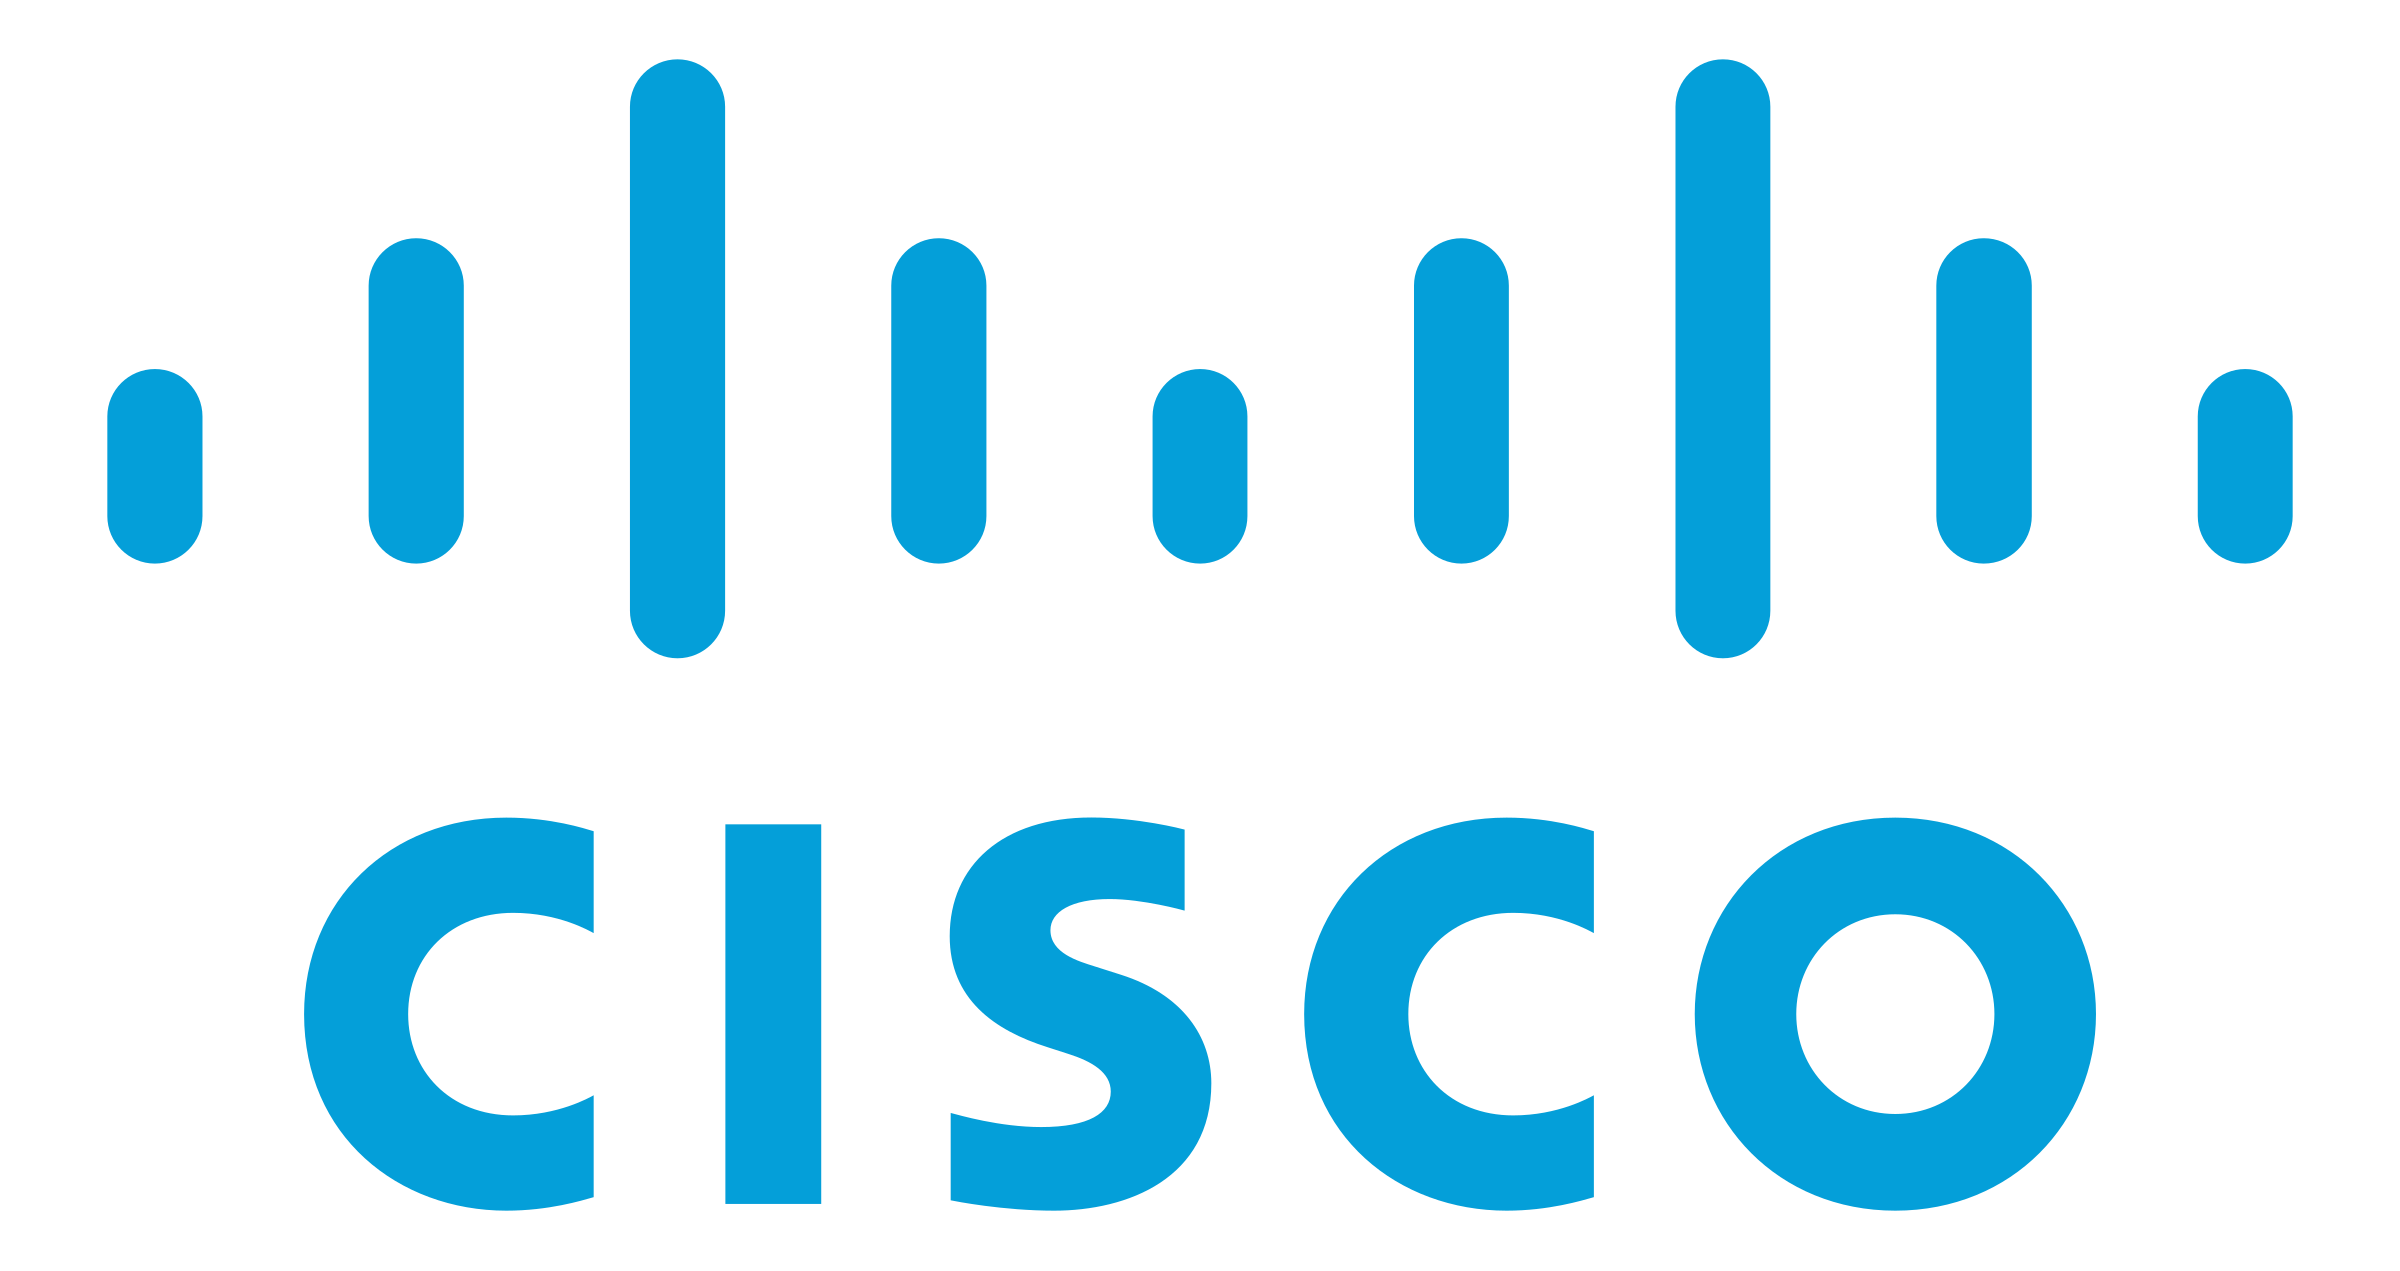 Icon representing Cisco